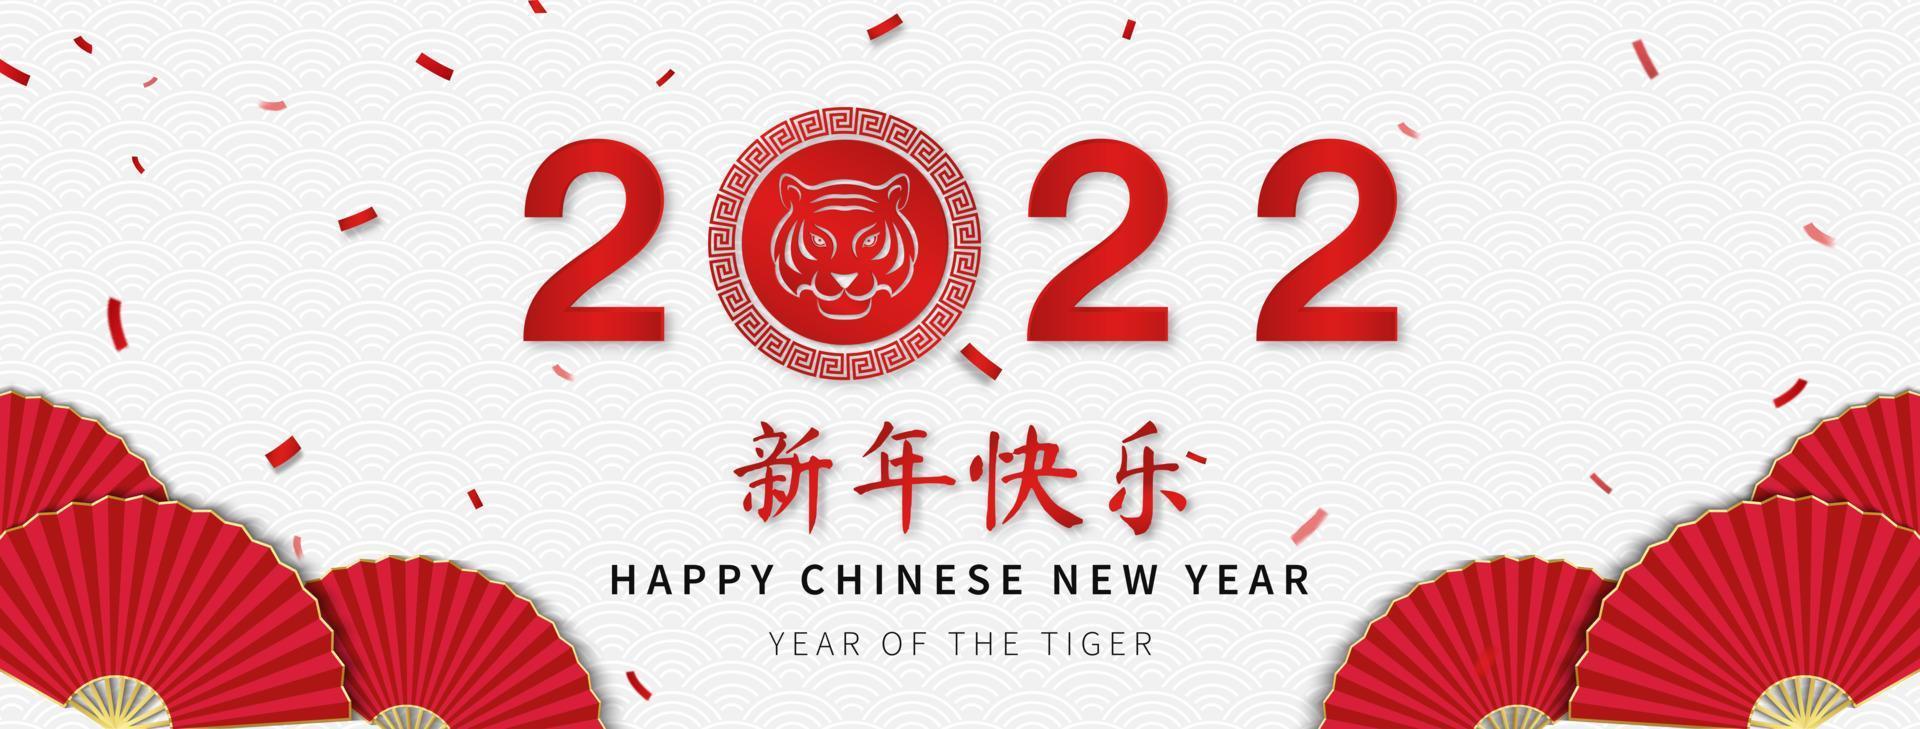 gott kinesiskt nytt år 2022, tigerns år texter på bannerbakgrund i orientalisk stil, översättning av utländska texter som kinesiskt nyår vektor